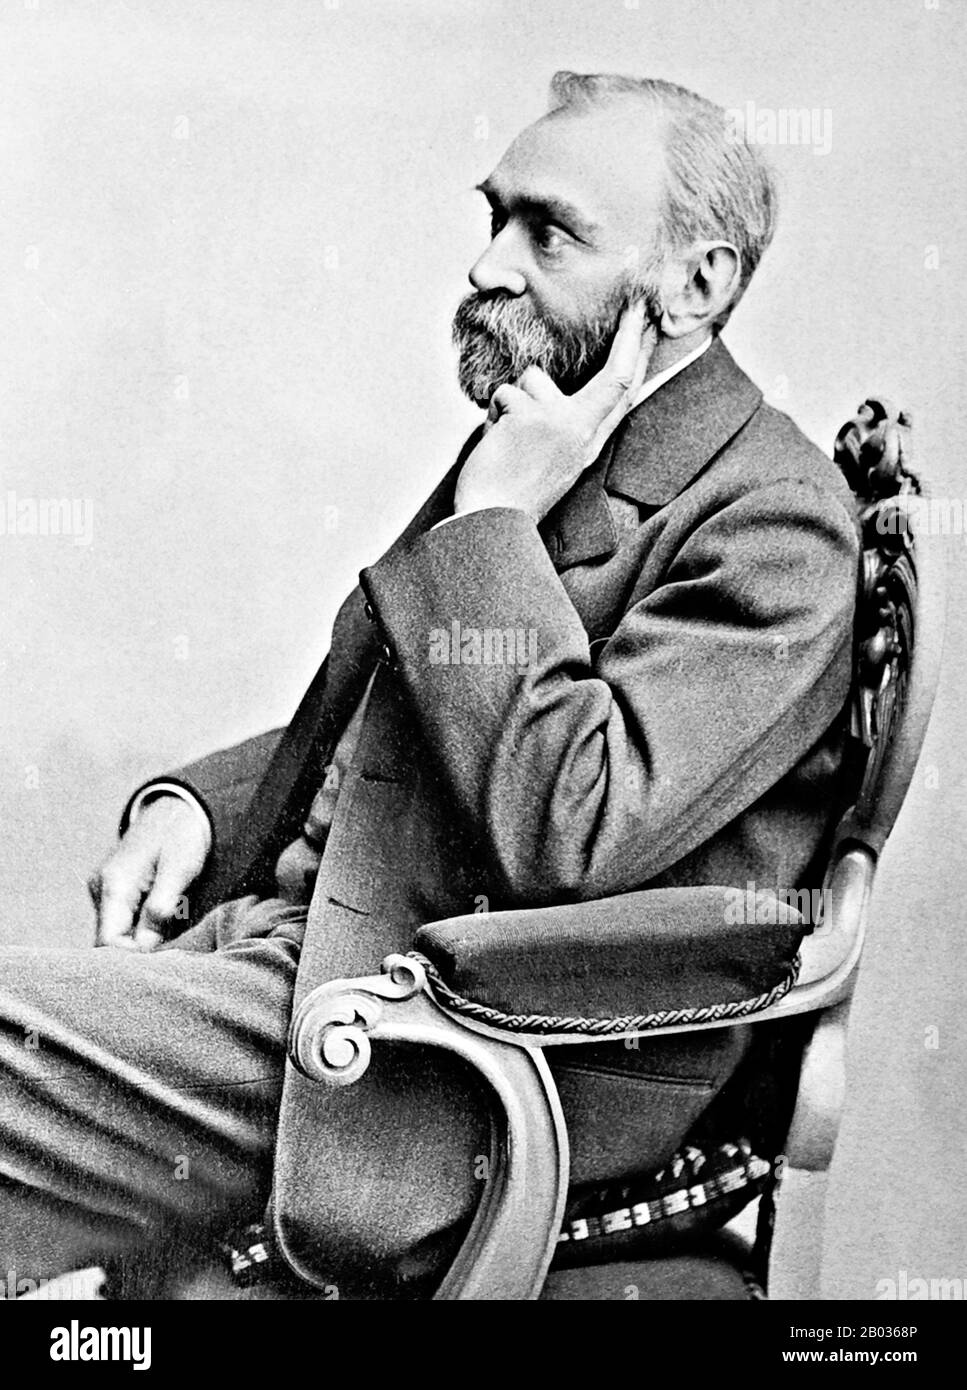 Alfred Bernhard Nobel (* 21. Oktober 1834 in Schweden; † 10. Dezember 1896) war ein schwedischer Chemiker, Ingenieur, Erfinder, Geschäftsmann und Philanthrop. Nobel, der für die Erfindung von Dynamit bekannt ist, besaß auch Bofors, das er von seiner früheren Rolle als erster Eisen- und Stahlhersteller zu einem großen Hersteller von Kanonen und anderen Rüstungsgütern umleiten ließ. Nobel hielt 355 verschiedene Patente, wobei Dynamit der bekannteste war. Nachdem er einen vorzeitigen Nachruf gelesen hatte, der ihn wegen des Waffenverkaufs verurteilte, vermachte er sein Vermögen, die Nobelpreise zu gründen. Das synthetische Element Nobelium wurde nach h benannt Stockfoto